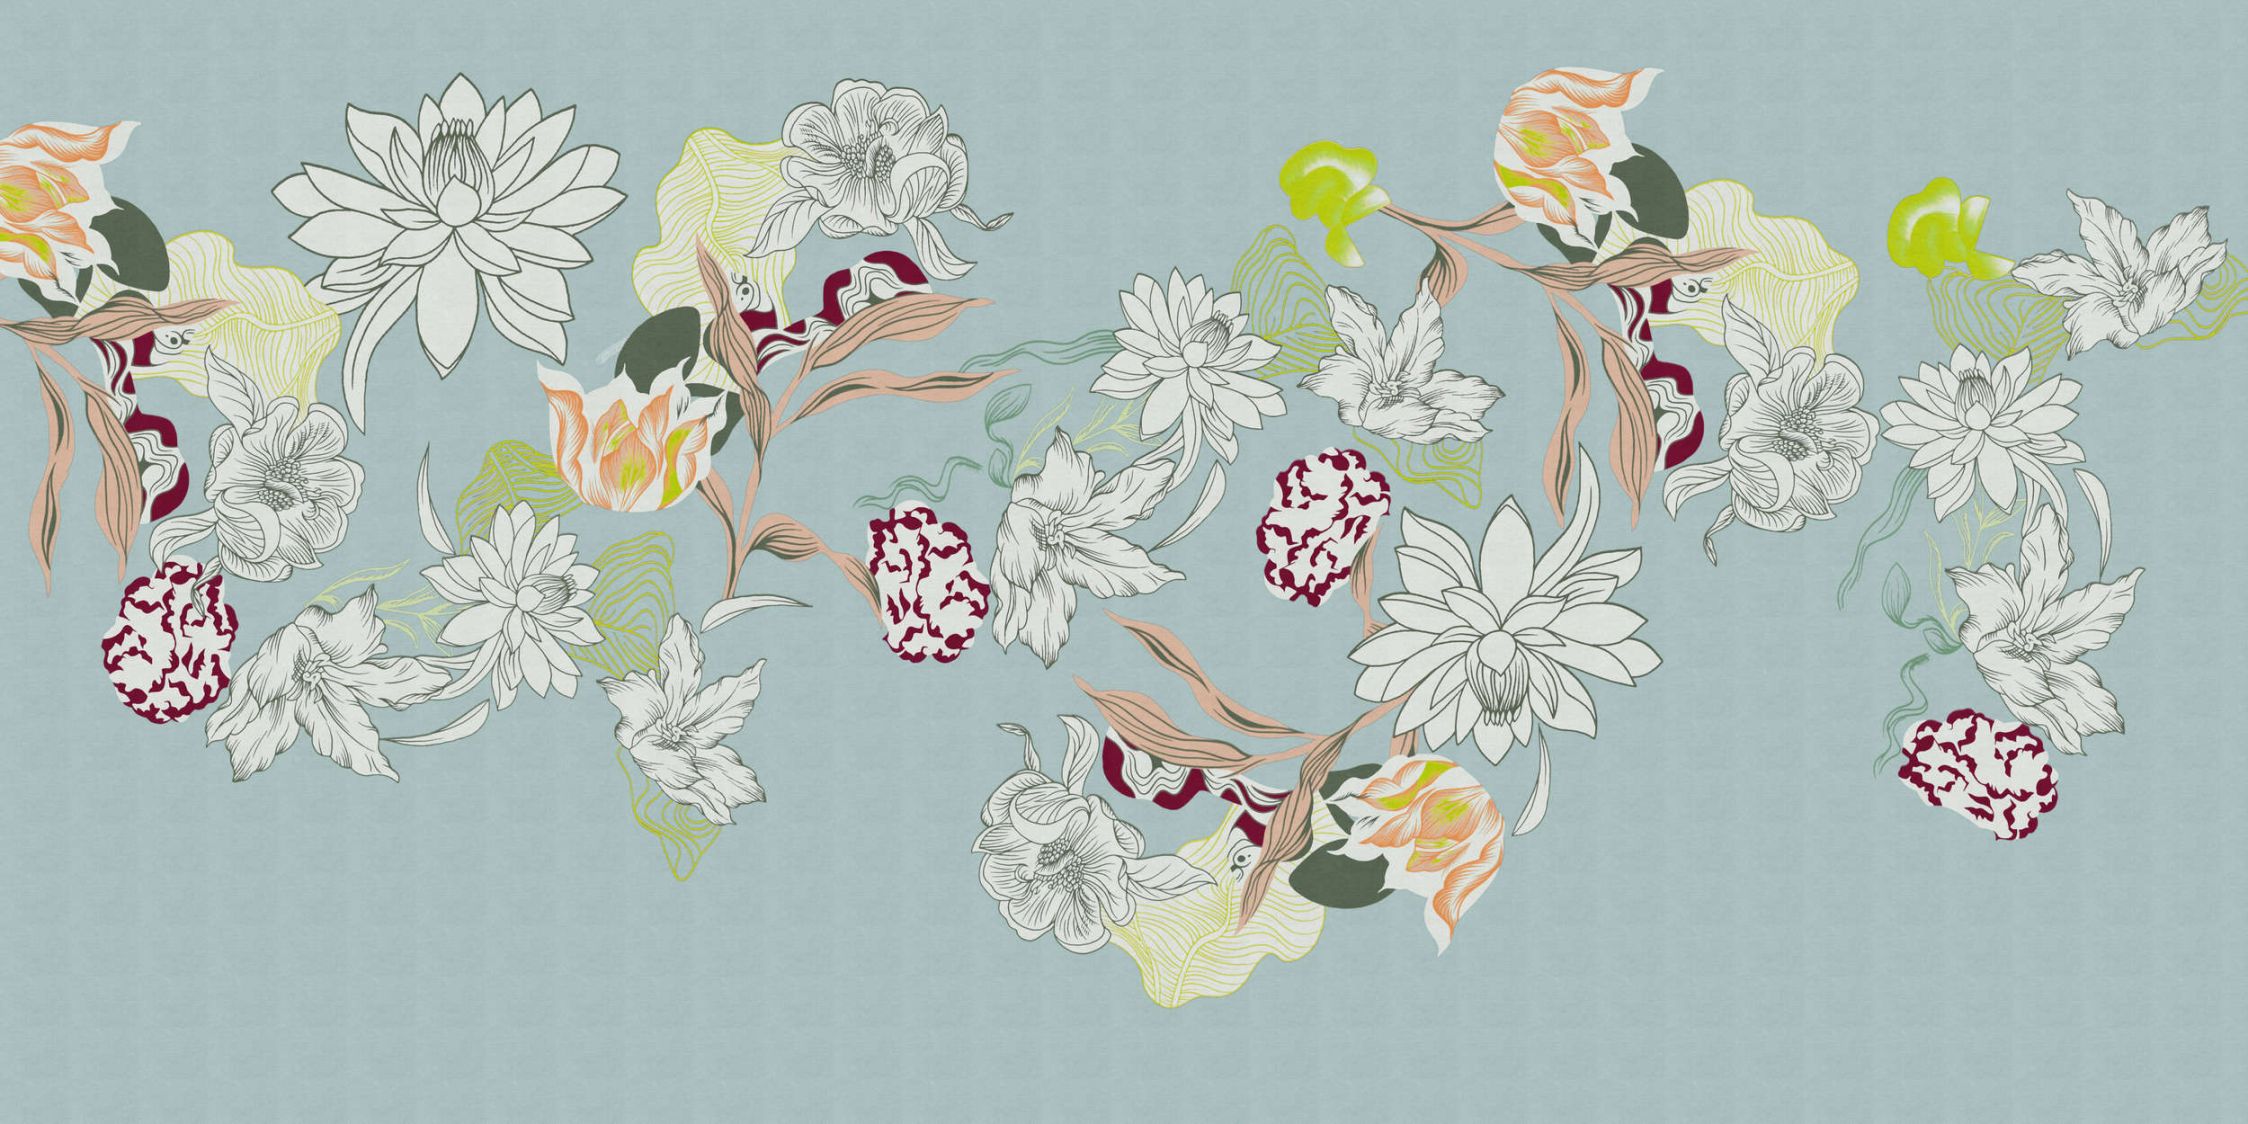             Digital behang »botany 2« - Abstracte bloemmotieven met groene accenten tegen een subtiele linnen textuur - Matte, gladde vliesstof
        